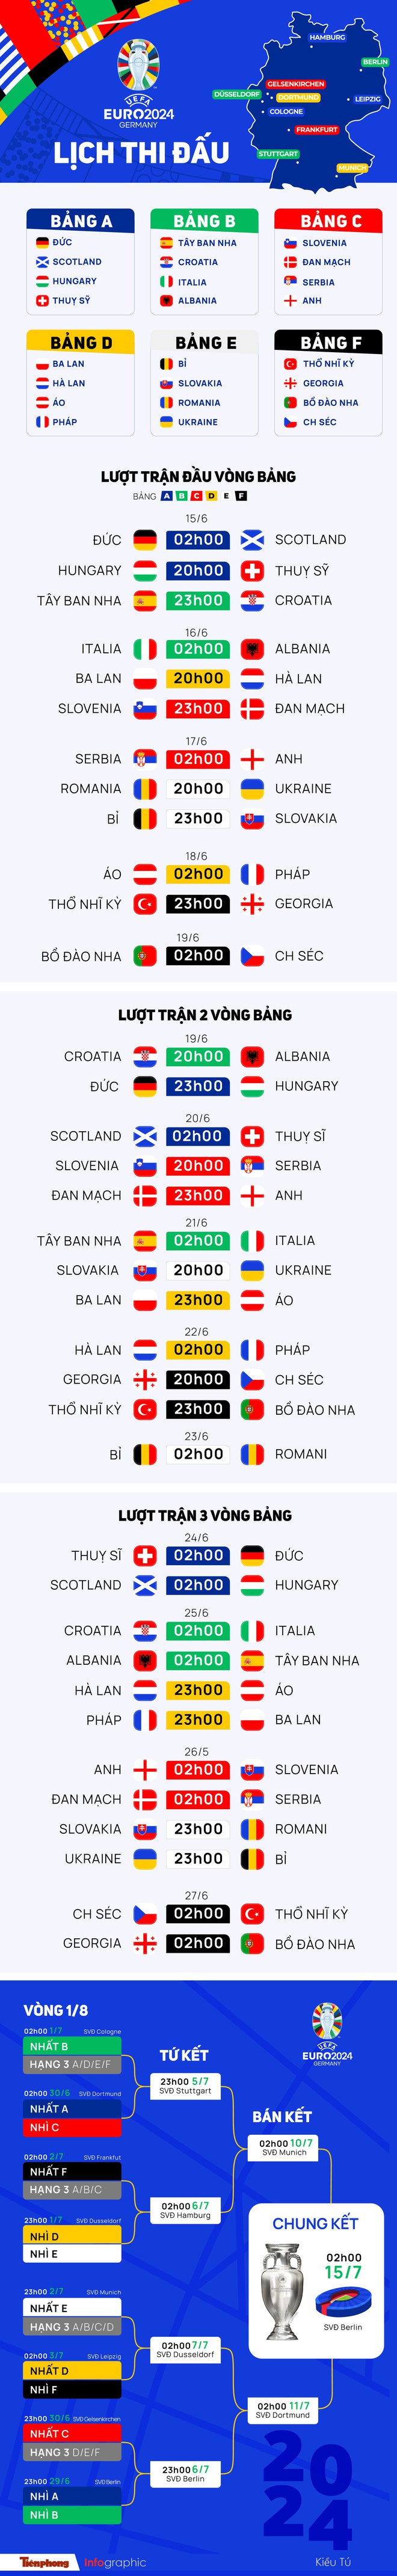 Lịch thi đấu UEFA EURO 2024 mới nhất - Ảnh 1.